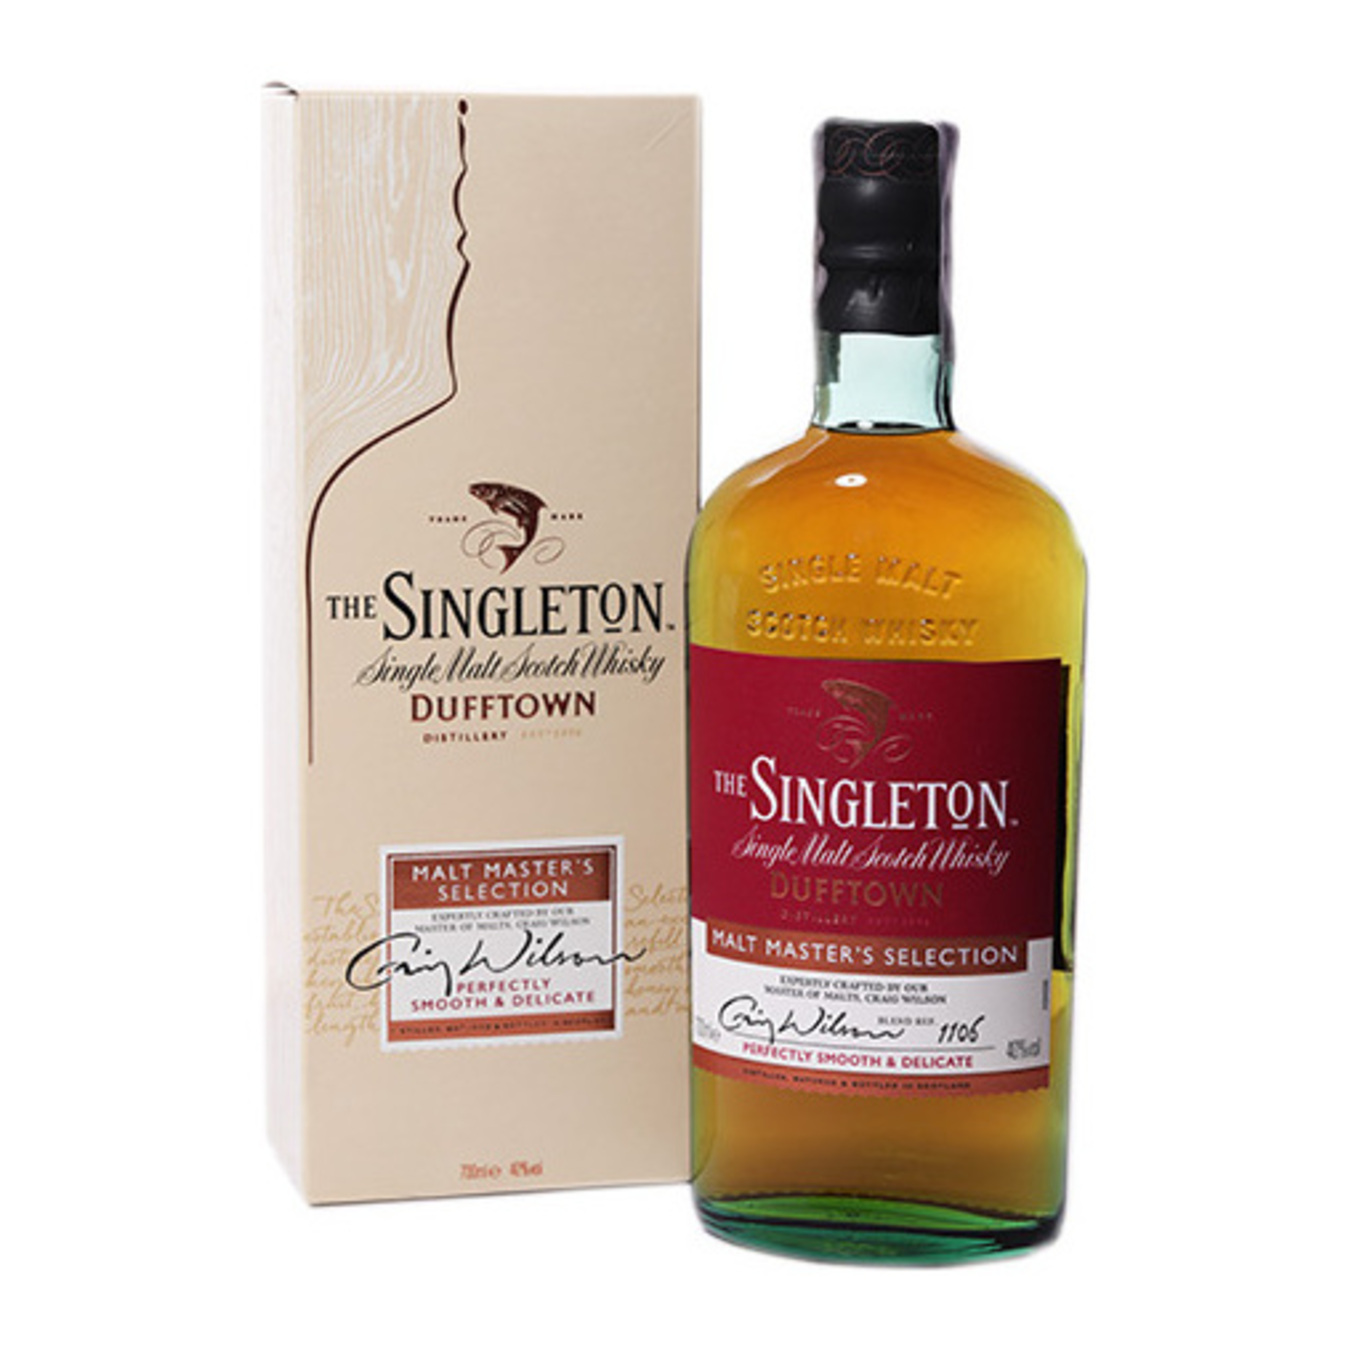 The Singleton of Dufftown Malt Master Selection Whisky 40% 0,7l